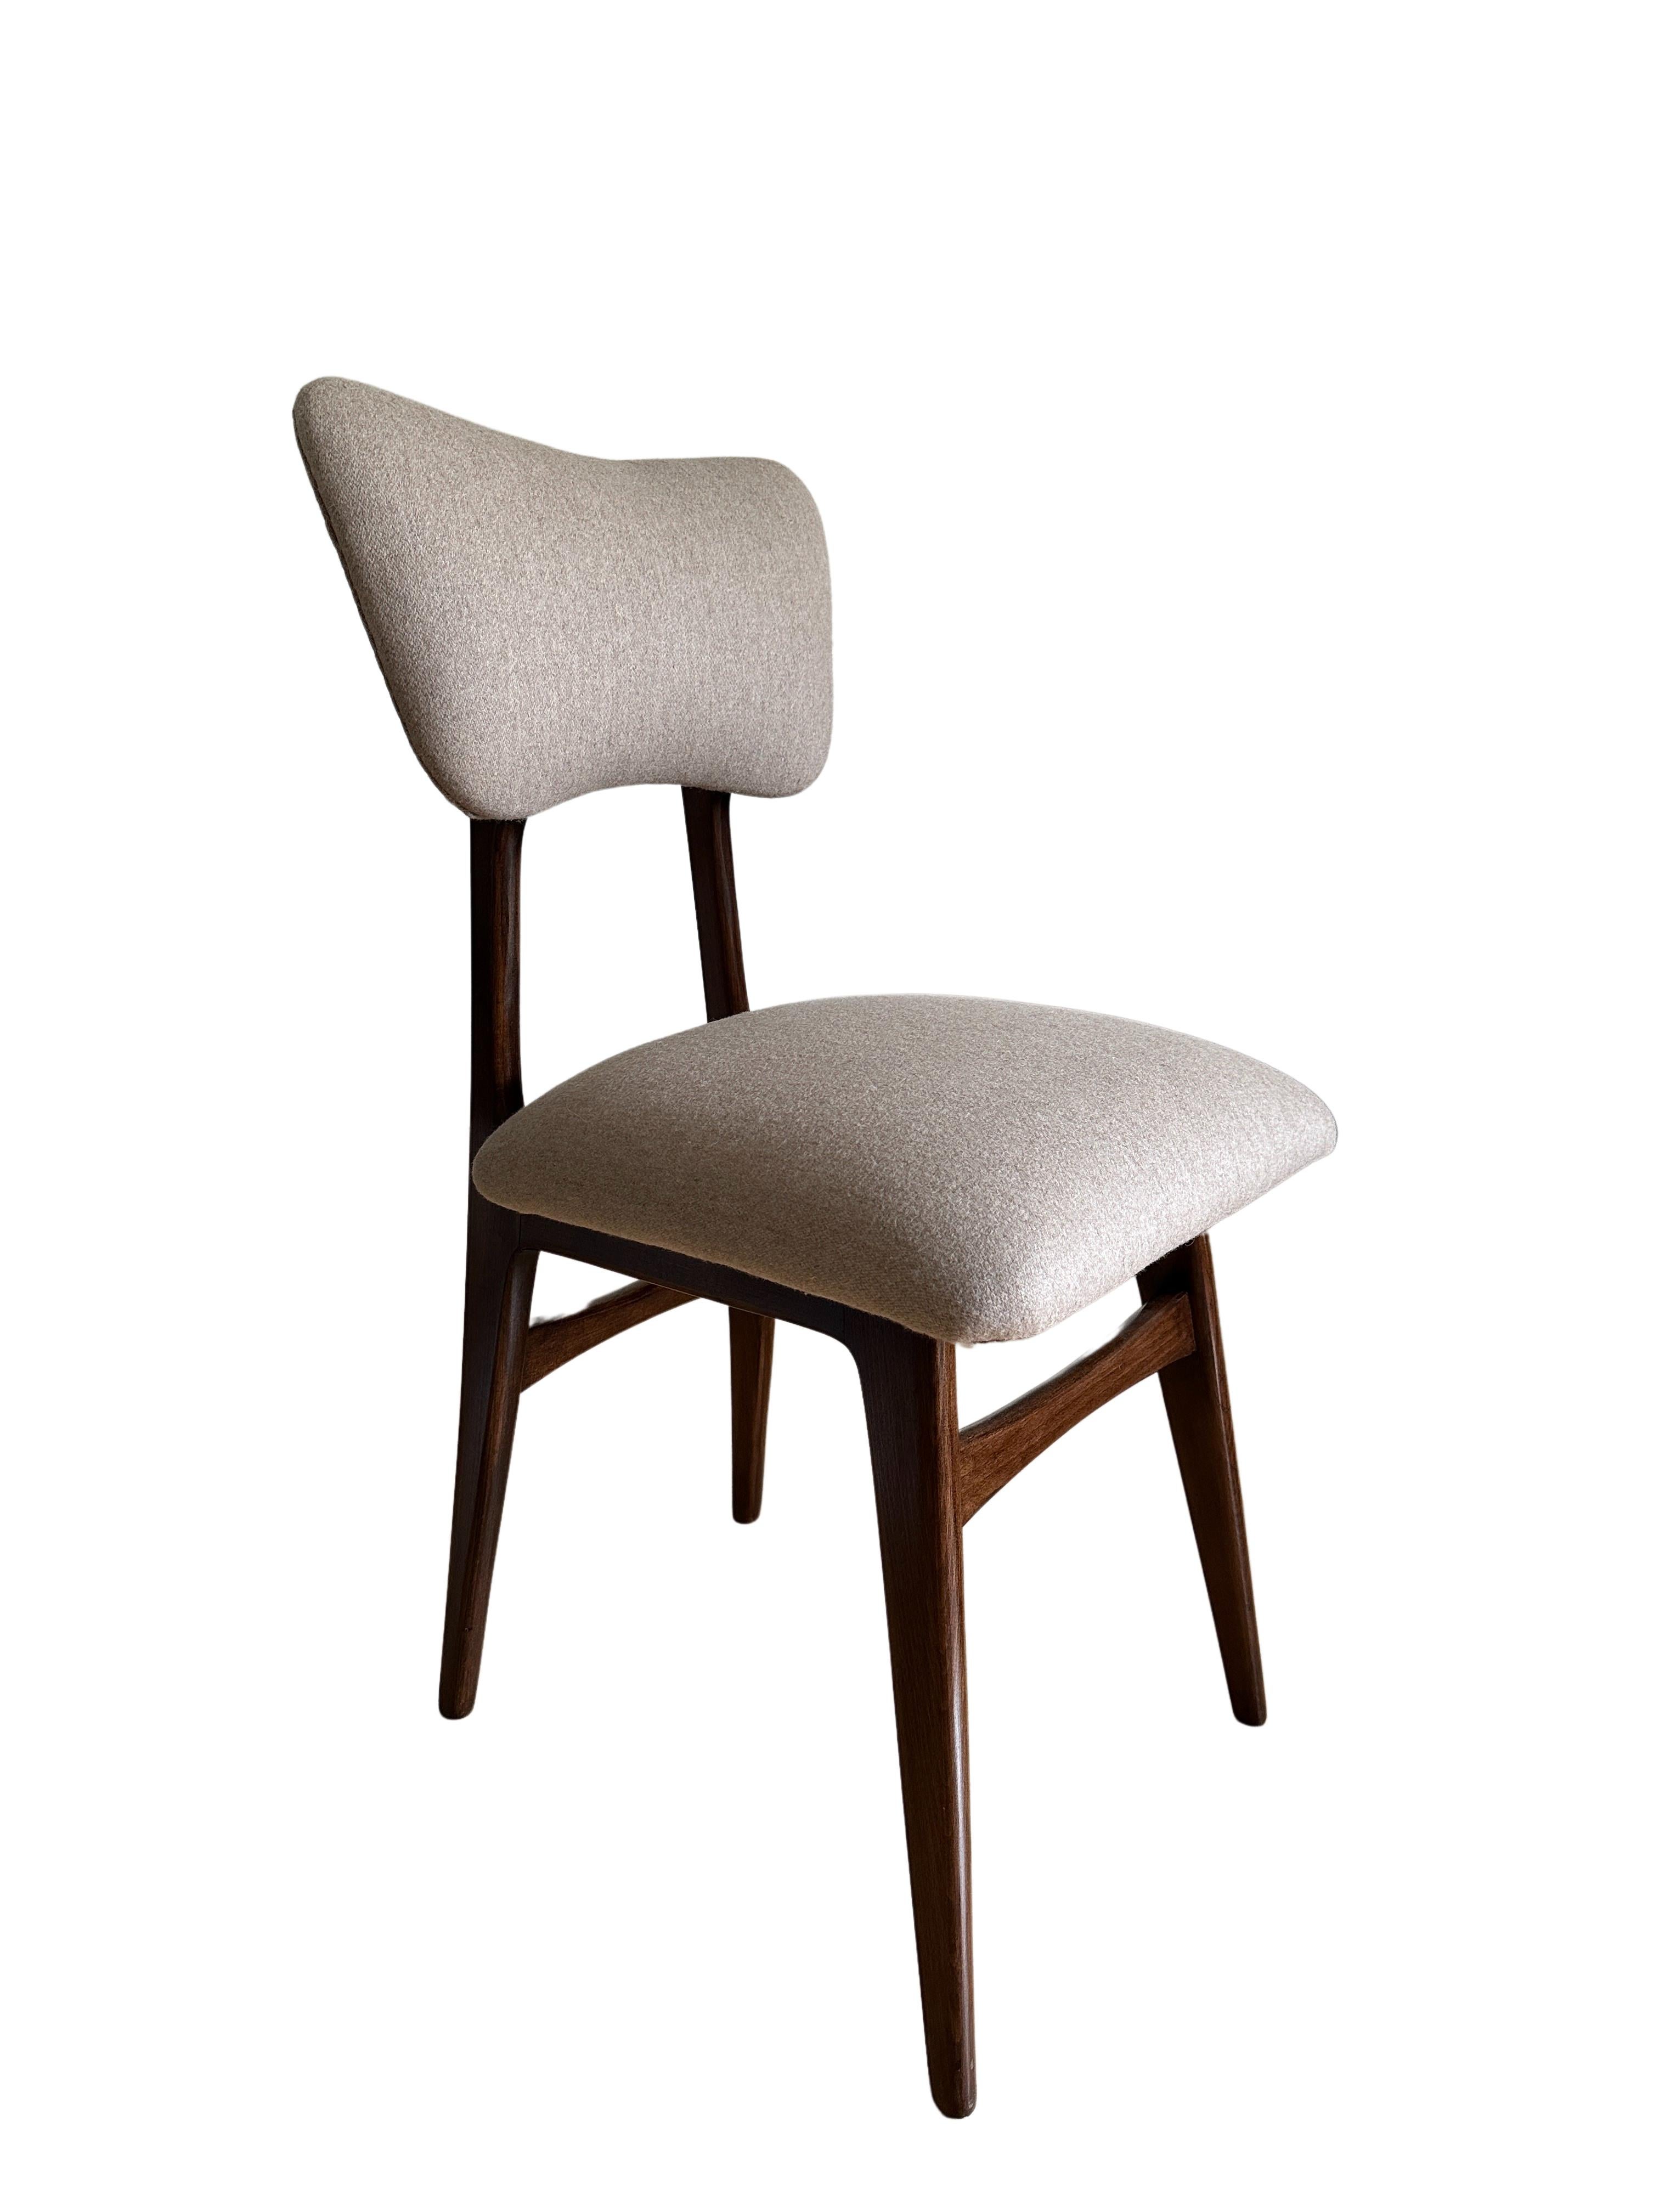 Einzigartiger, in den 1960er Jahren in Polen hergestellter Stuhl, entworfen von Rajmund Halas. 

Die Polsterung ist aus hochwertigem Wollstoff gefertigt, der sich angenehm weich anfühlt. 
Ein edler, dicker Wollstoff, der für Polsterungen empfohlen